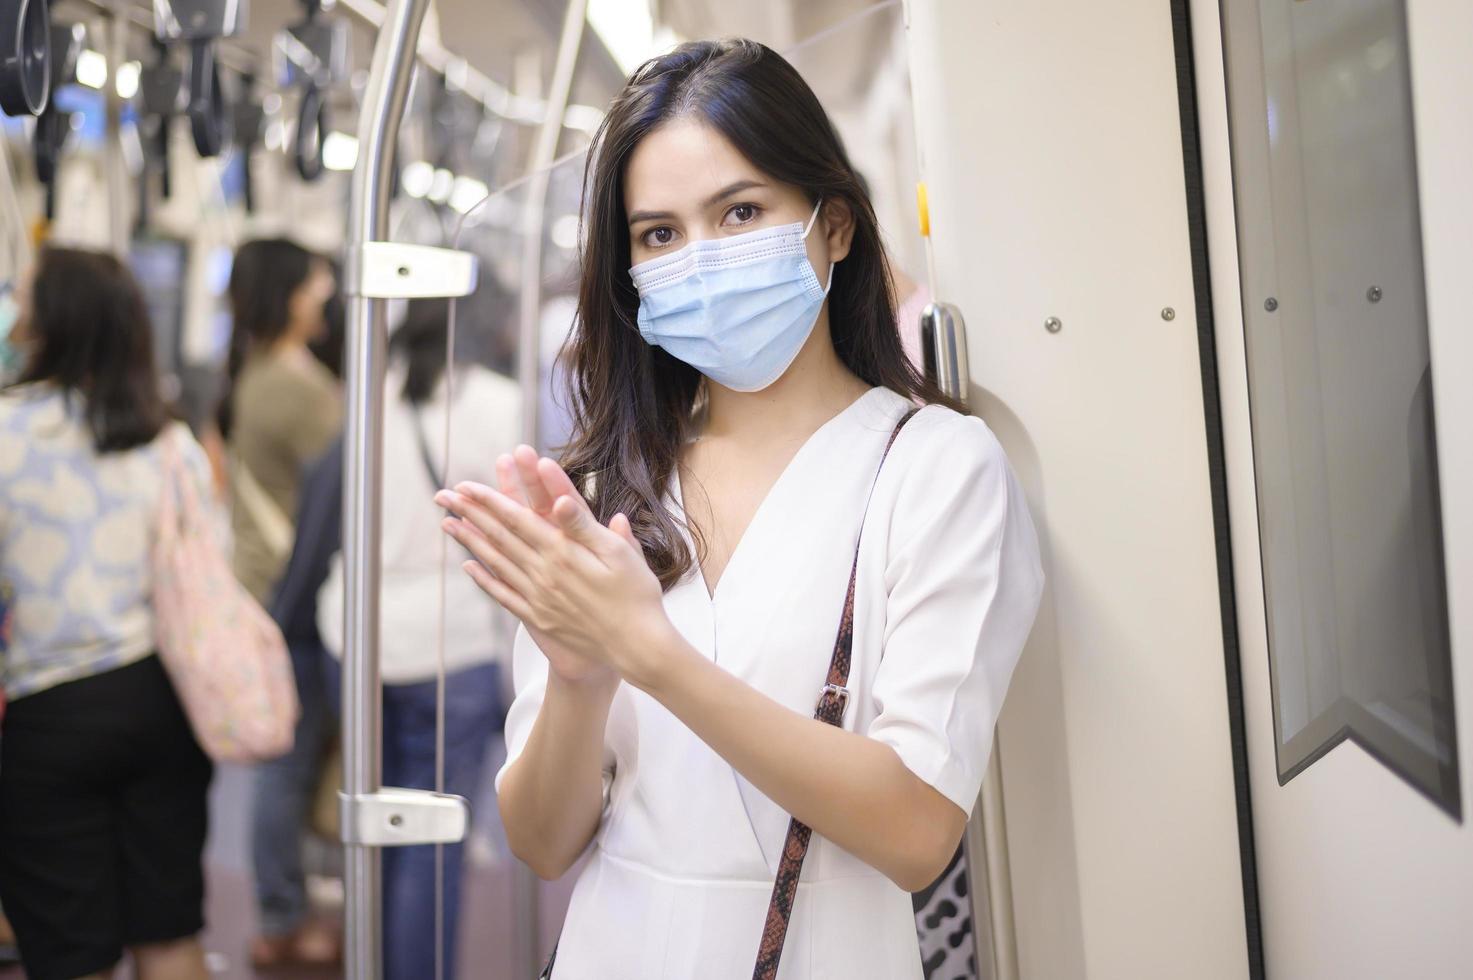 uma jovem usando máscara protetora no metrô está usando álcool para lavar as mãos, viajar sob pandemia covid-19, viagens de segurança, protocolo de distanciamento social, novo conceito de viagem normal foto